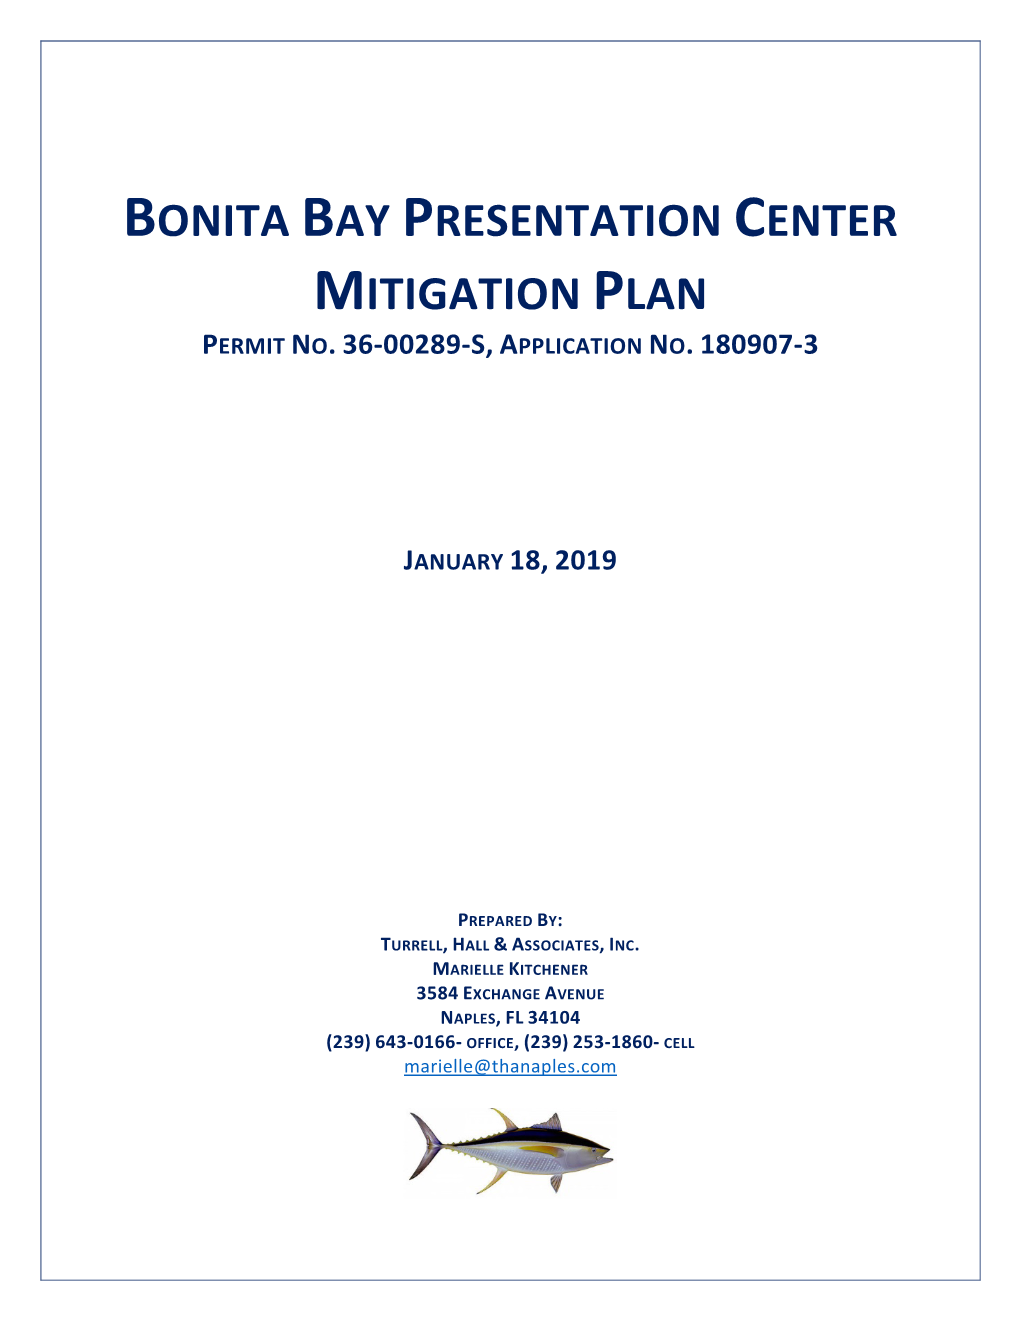 Bonita Bay Presentation Center Mitigation Plan Permit No